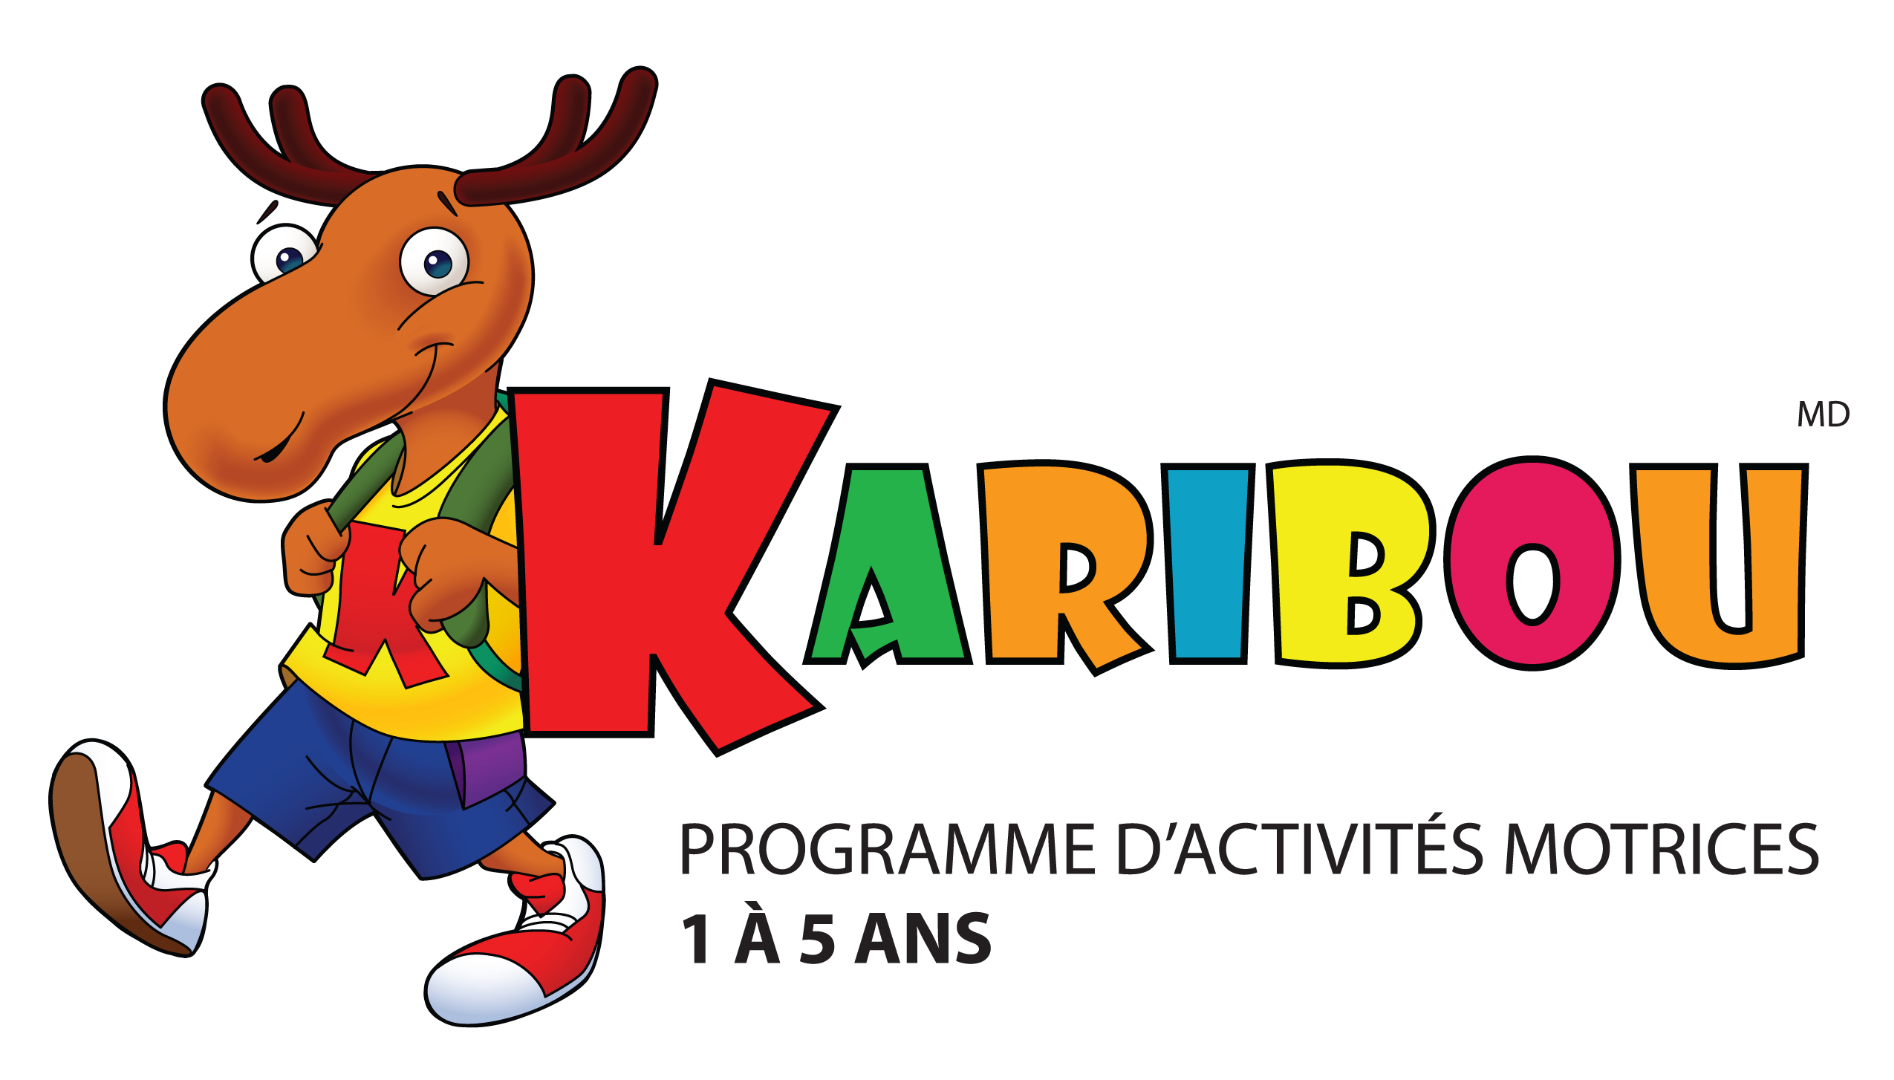 http://letourdumondedekaribou.com/media/1412/logo_karibou_soustitre.png